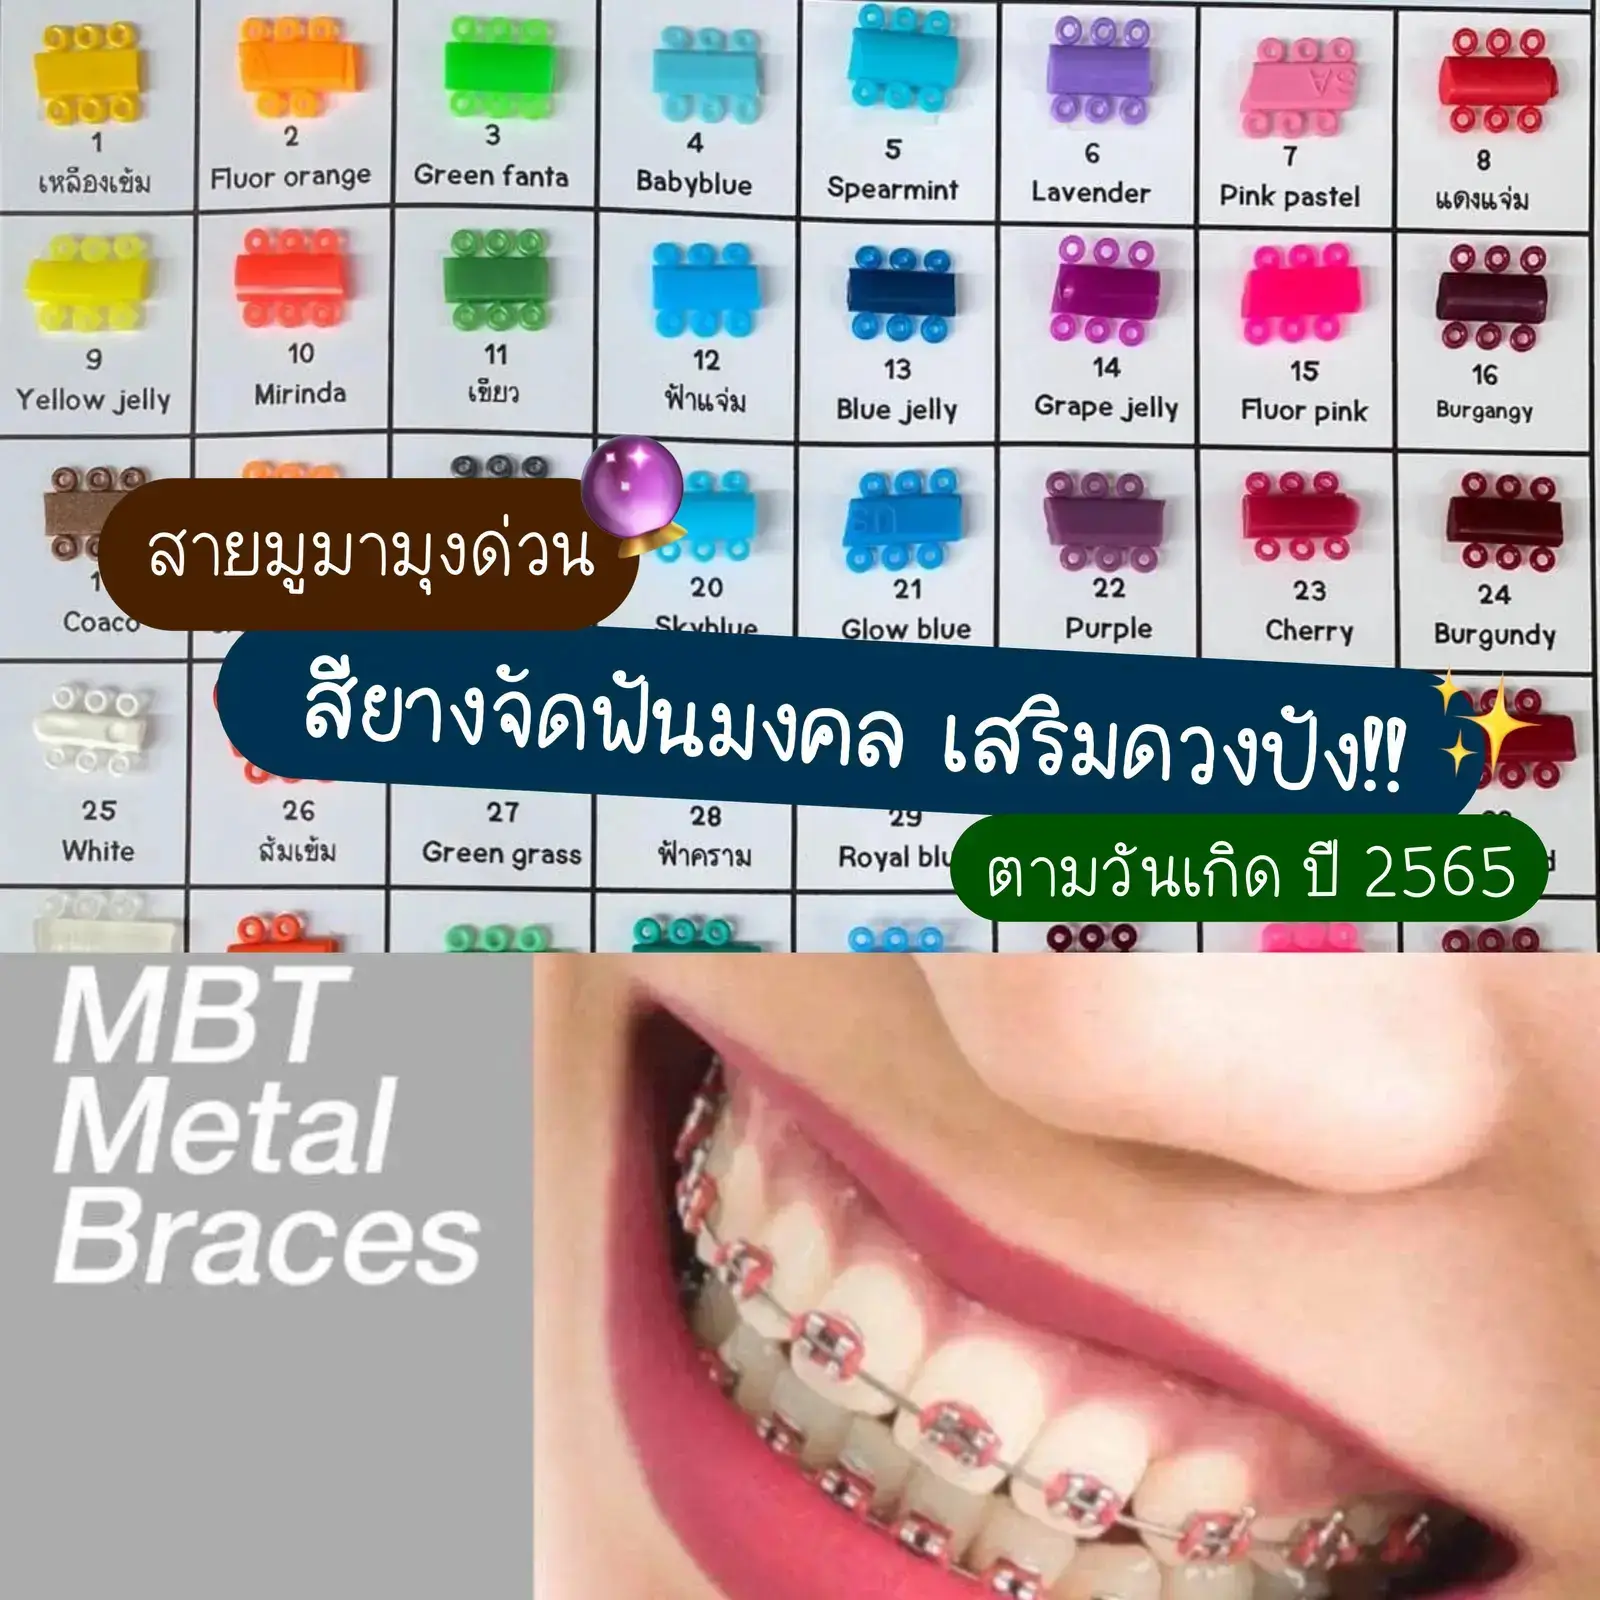 สีฟันไหนสวยกว่ากัน? 5 สีฟันที่ทำให้คุณมีรอยยิ้มสวยไม่แพ้ใคร - Phụ Tùng Ô Tô  Cpa